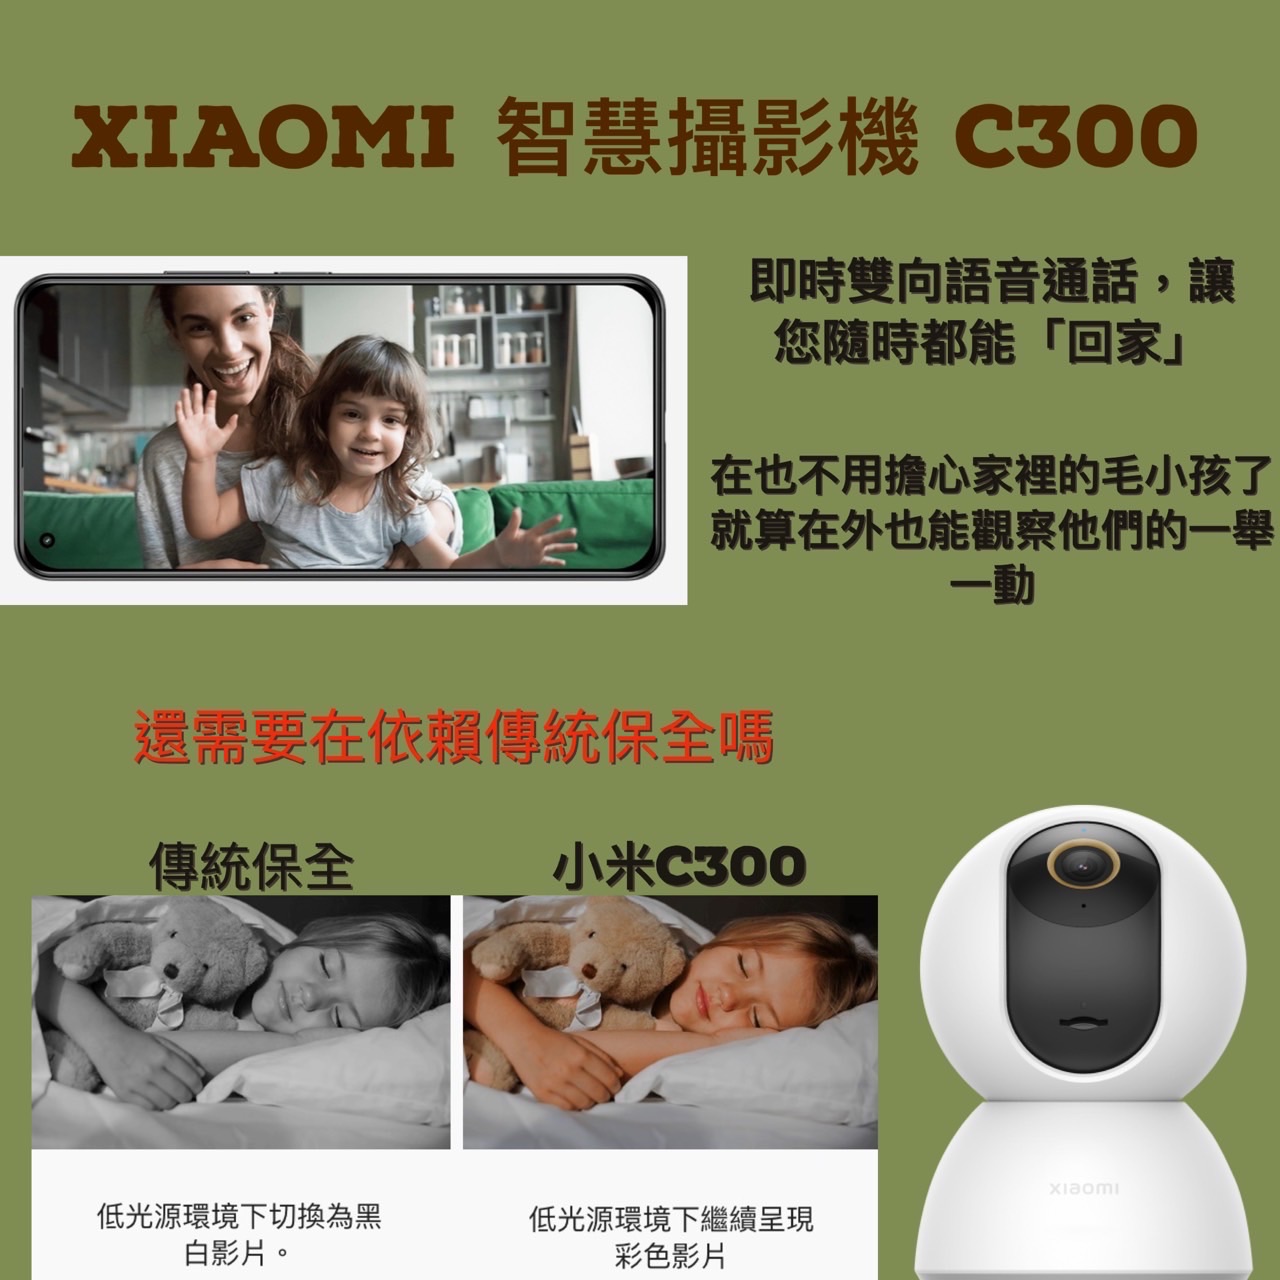 Xiaomi 智慧攝影機 C300